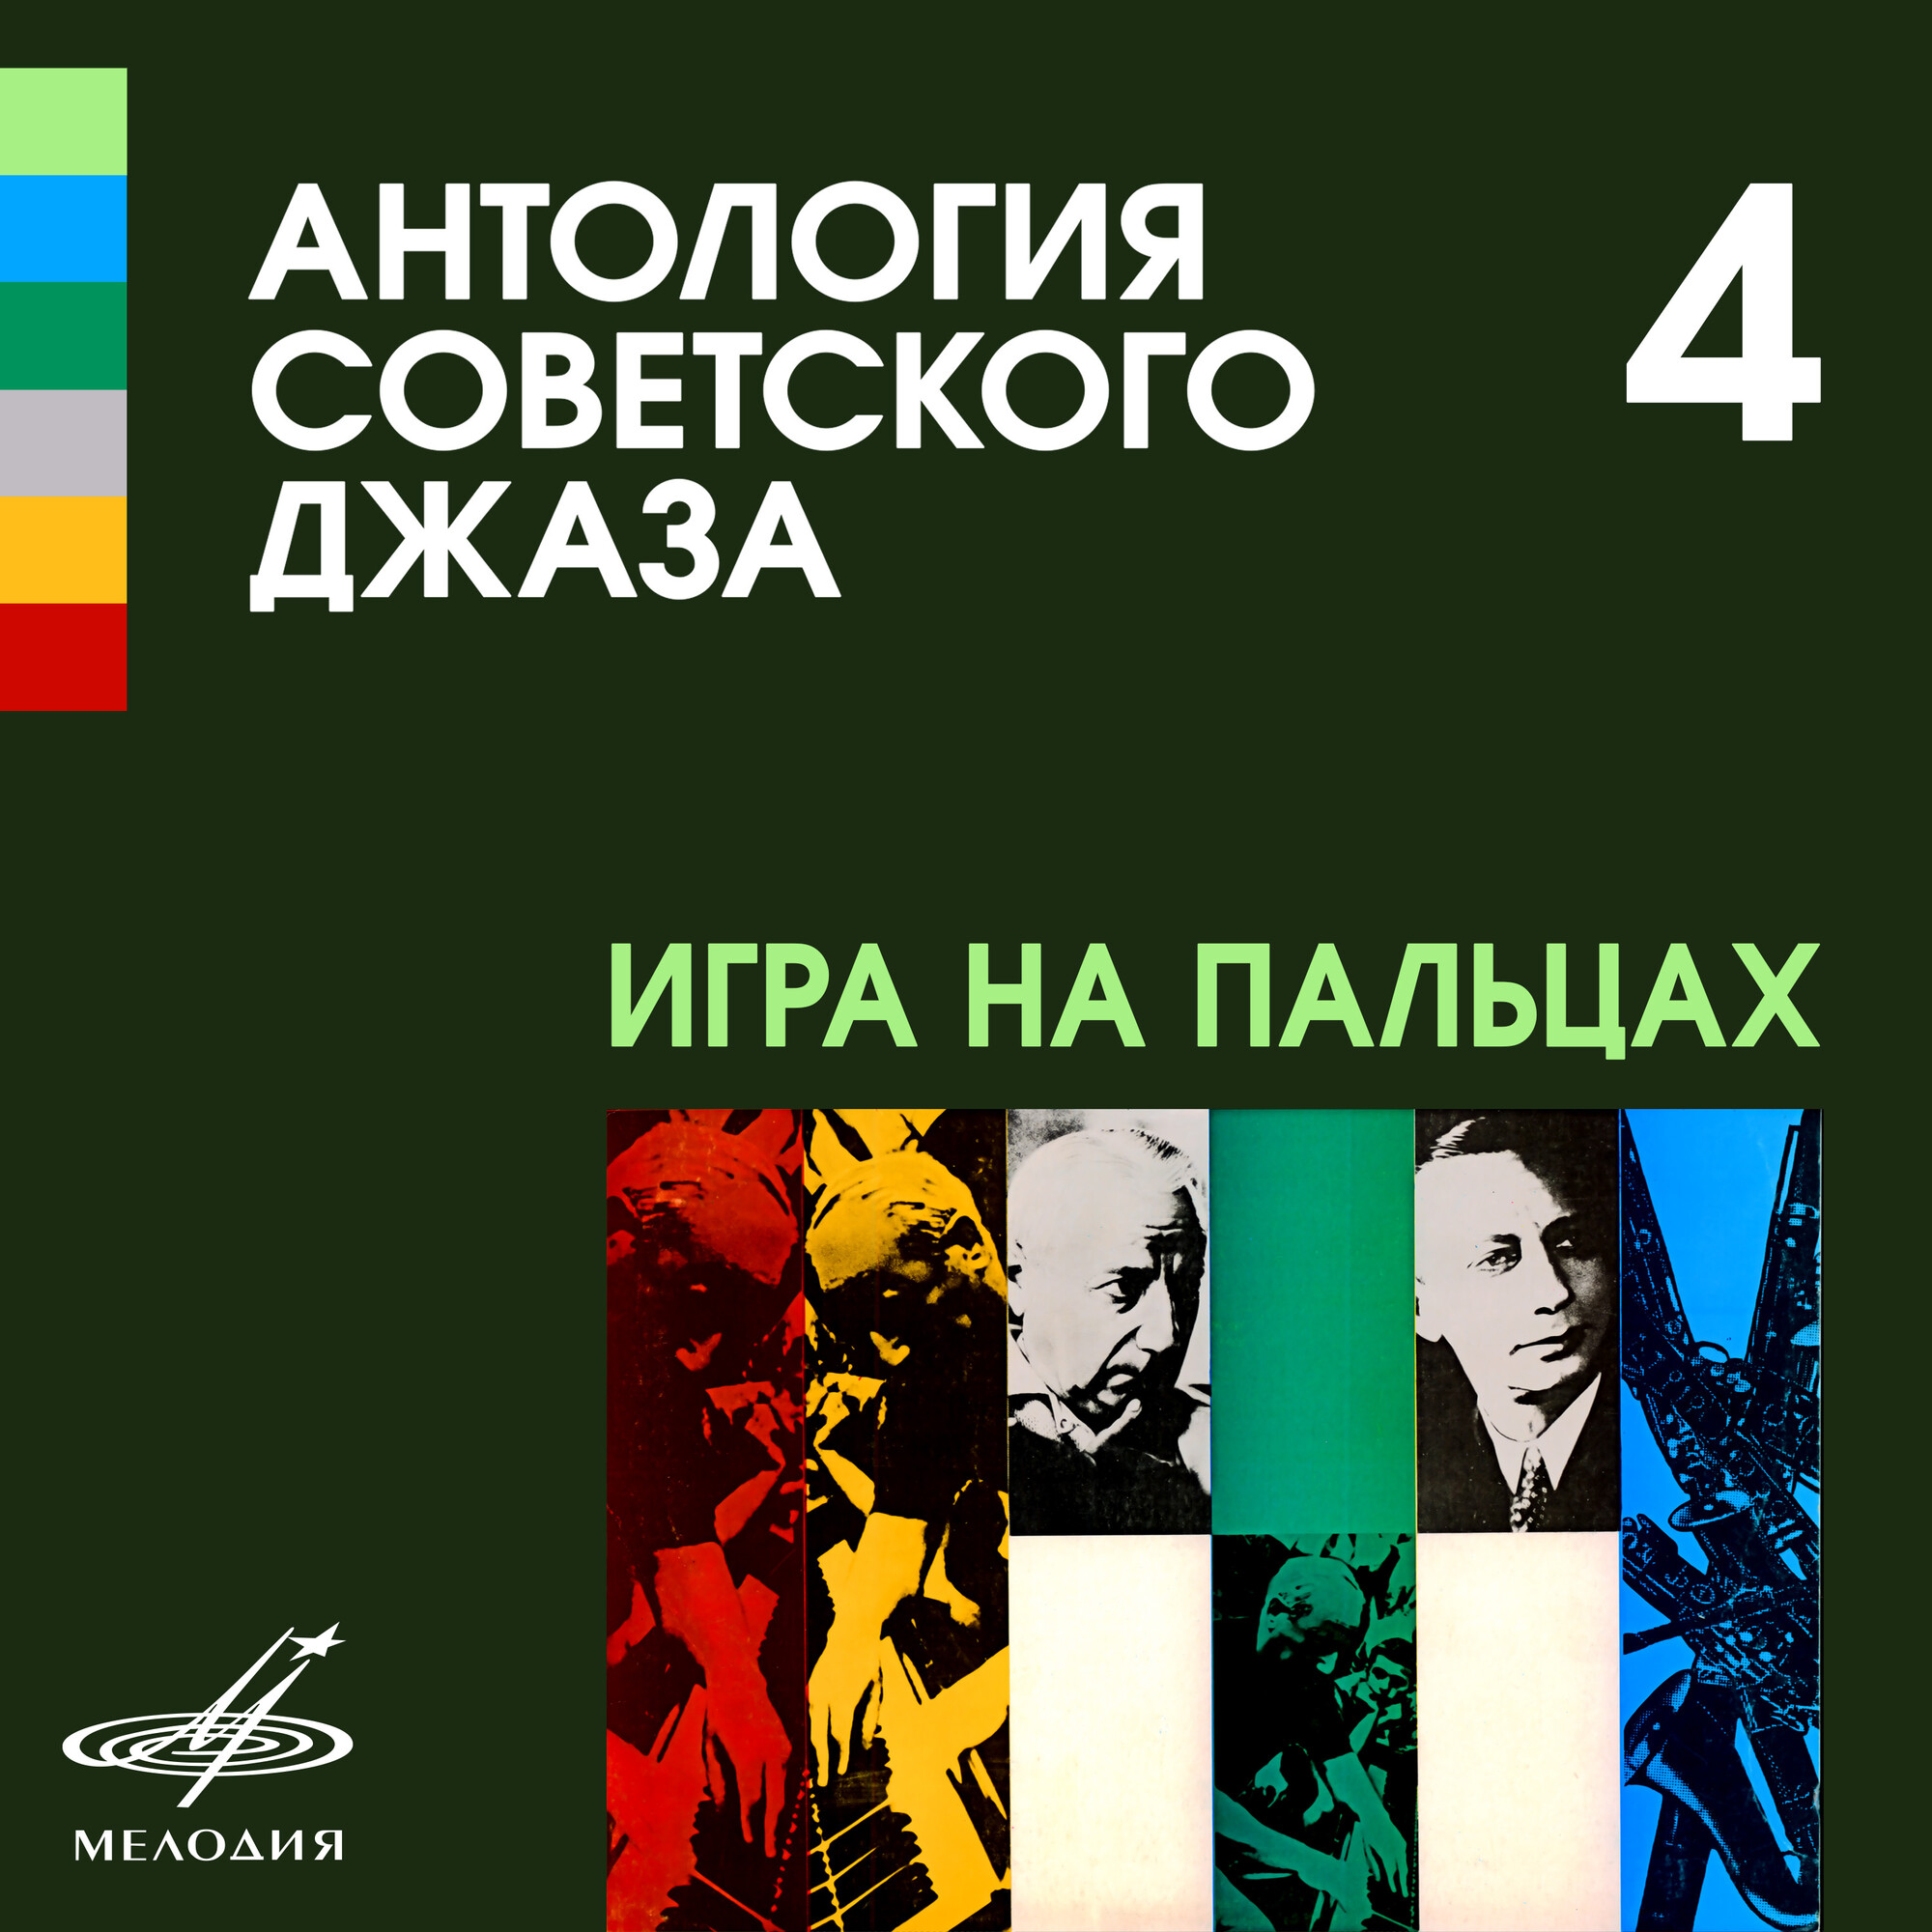 Антология советского джаза 4. Игра на пальцах